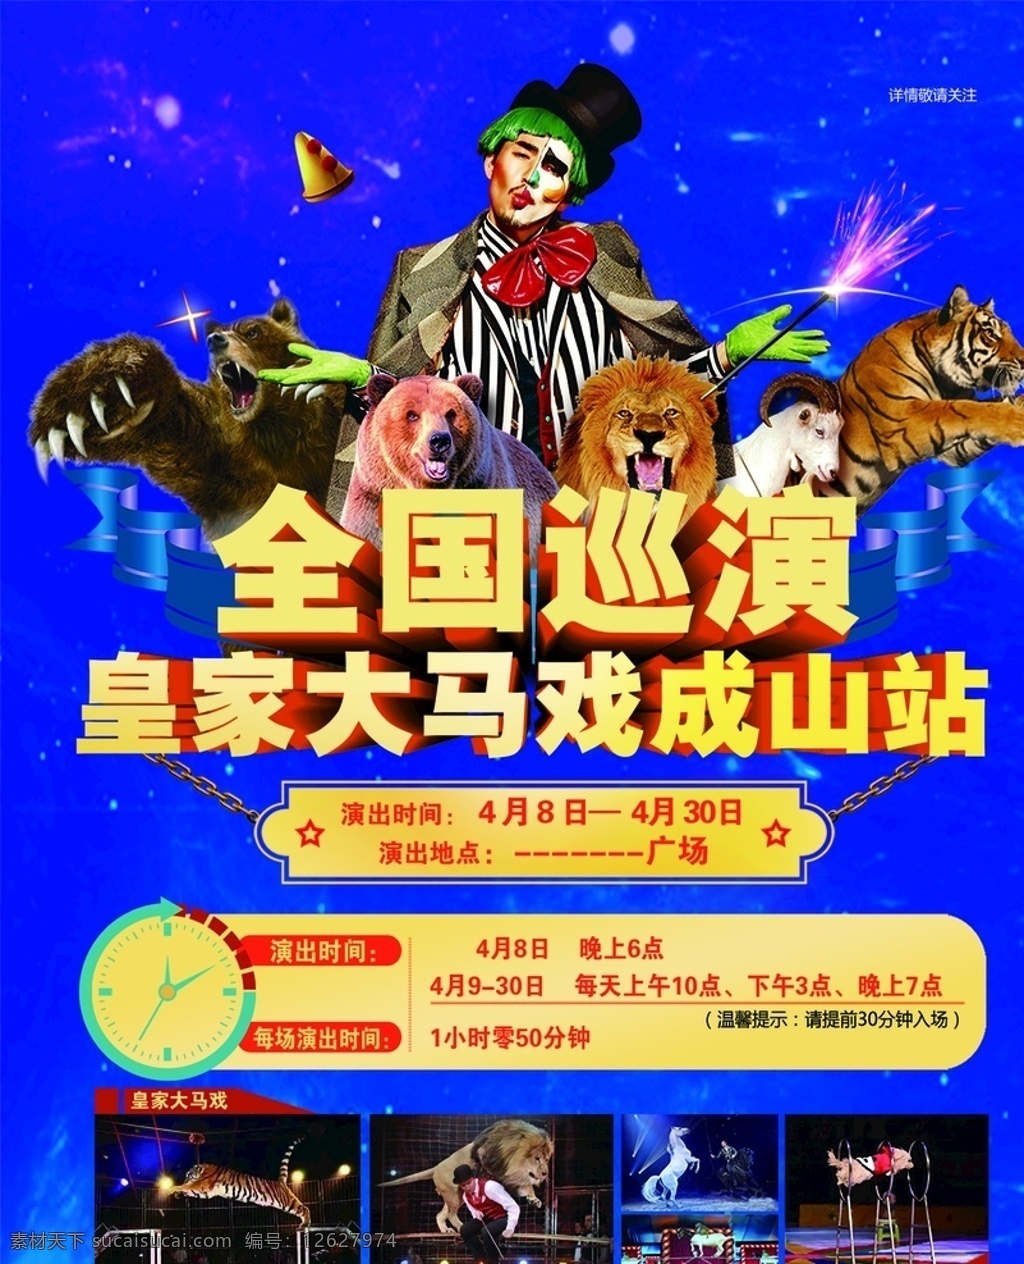 马戏团 皇家大马戏 小丑 动物表演 全国巡演 动物杂技 广告画册